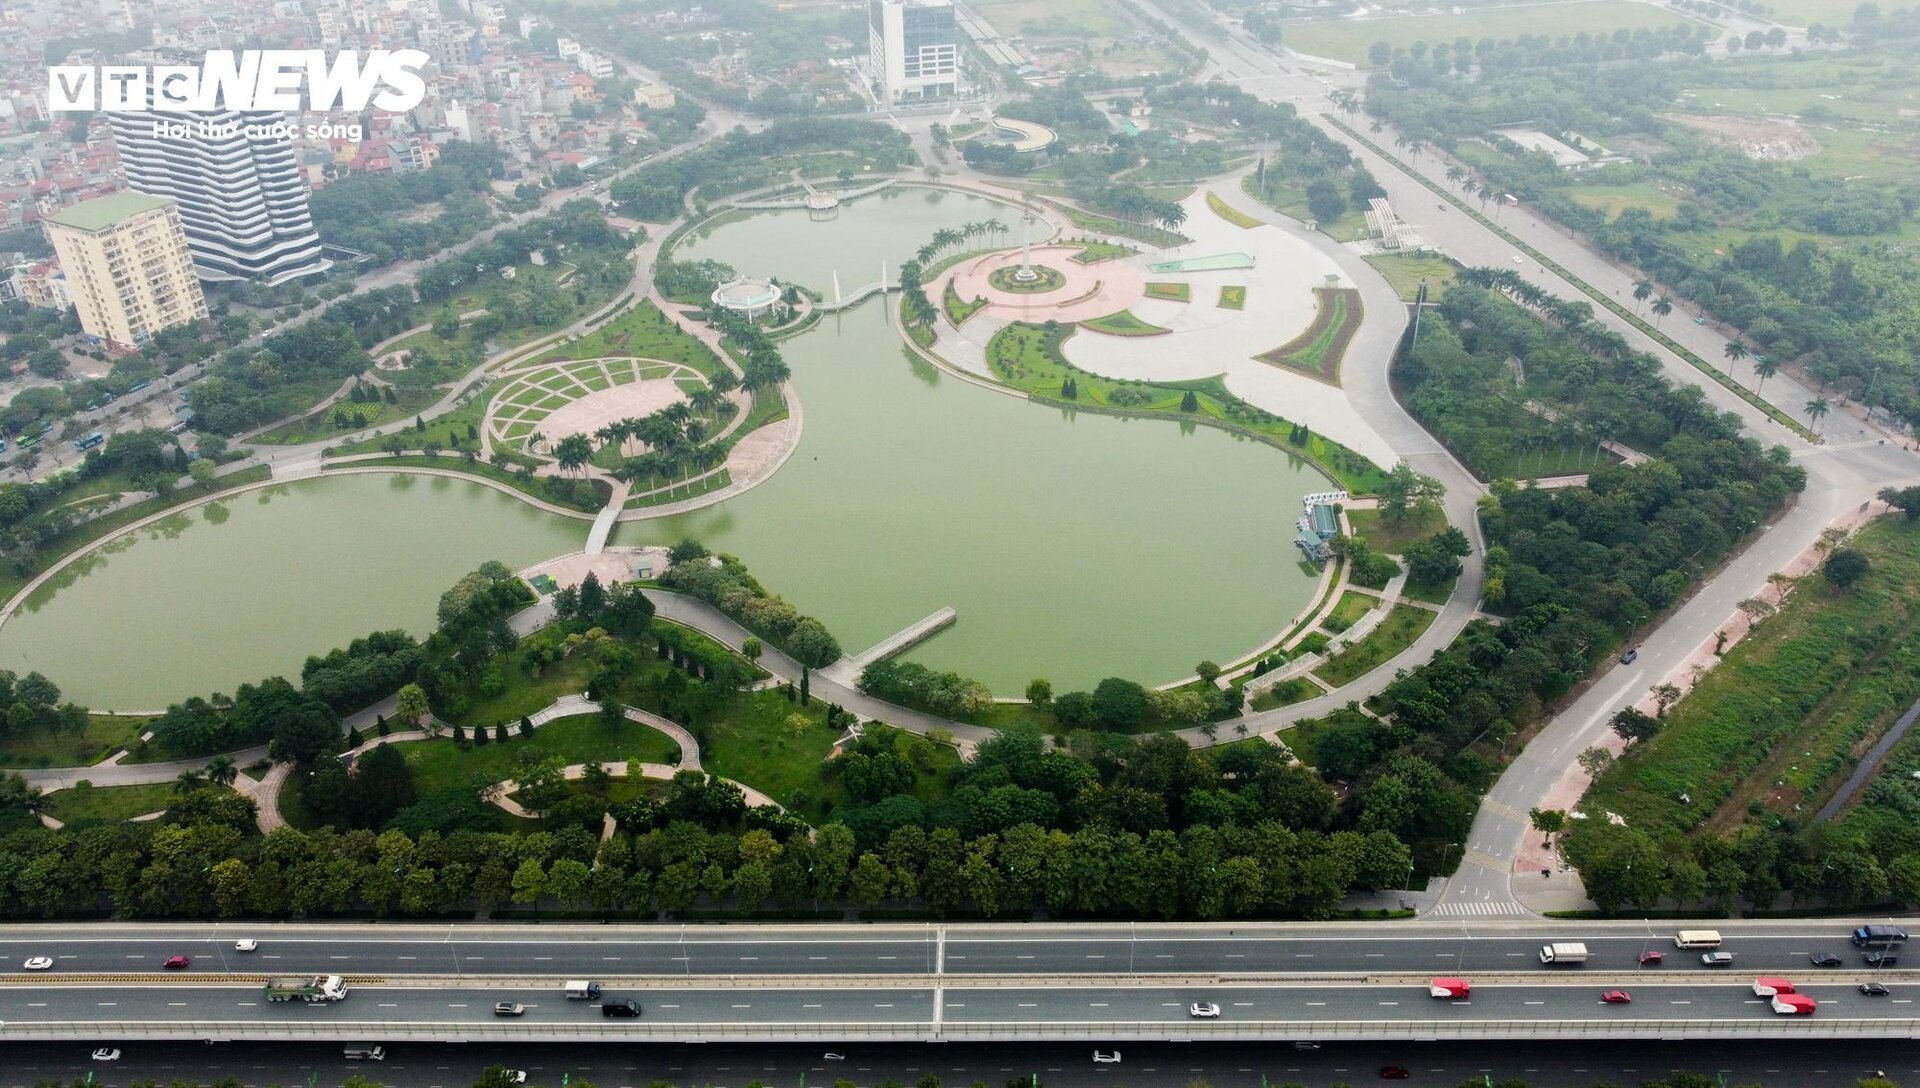 Cận cảnh 2 tuyến đường ở Hà Nội đề xuất thiết kế làn đường dành riêng cho xe đạp - Ảnh 1.